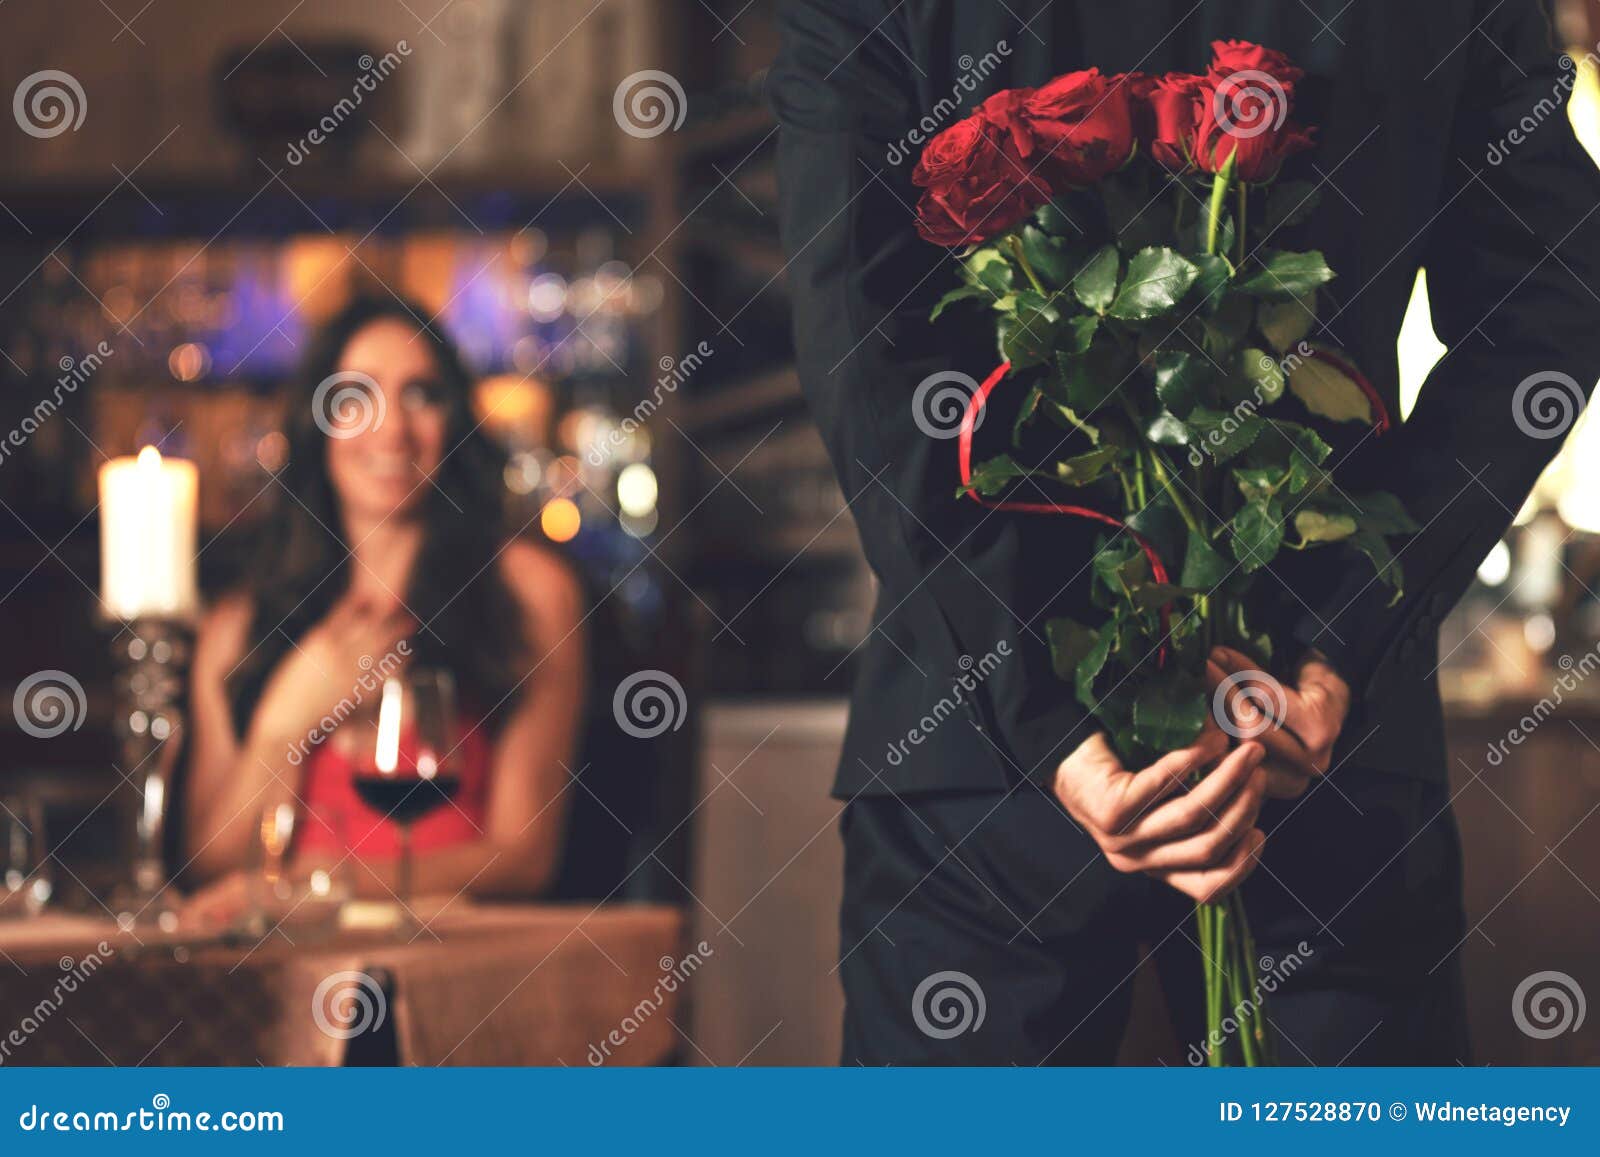 romantic surprise in the restaurant